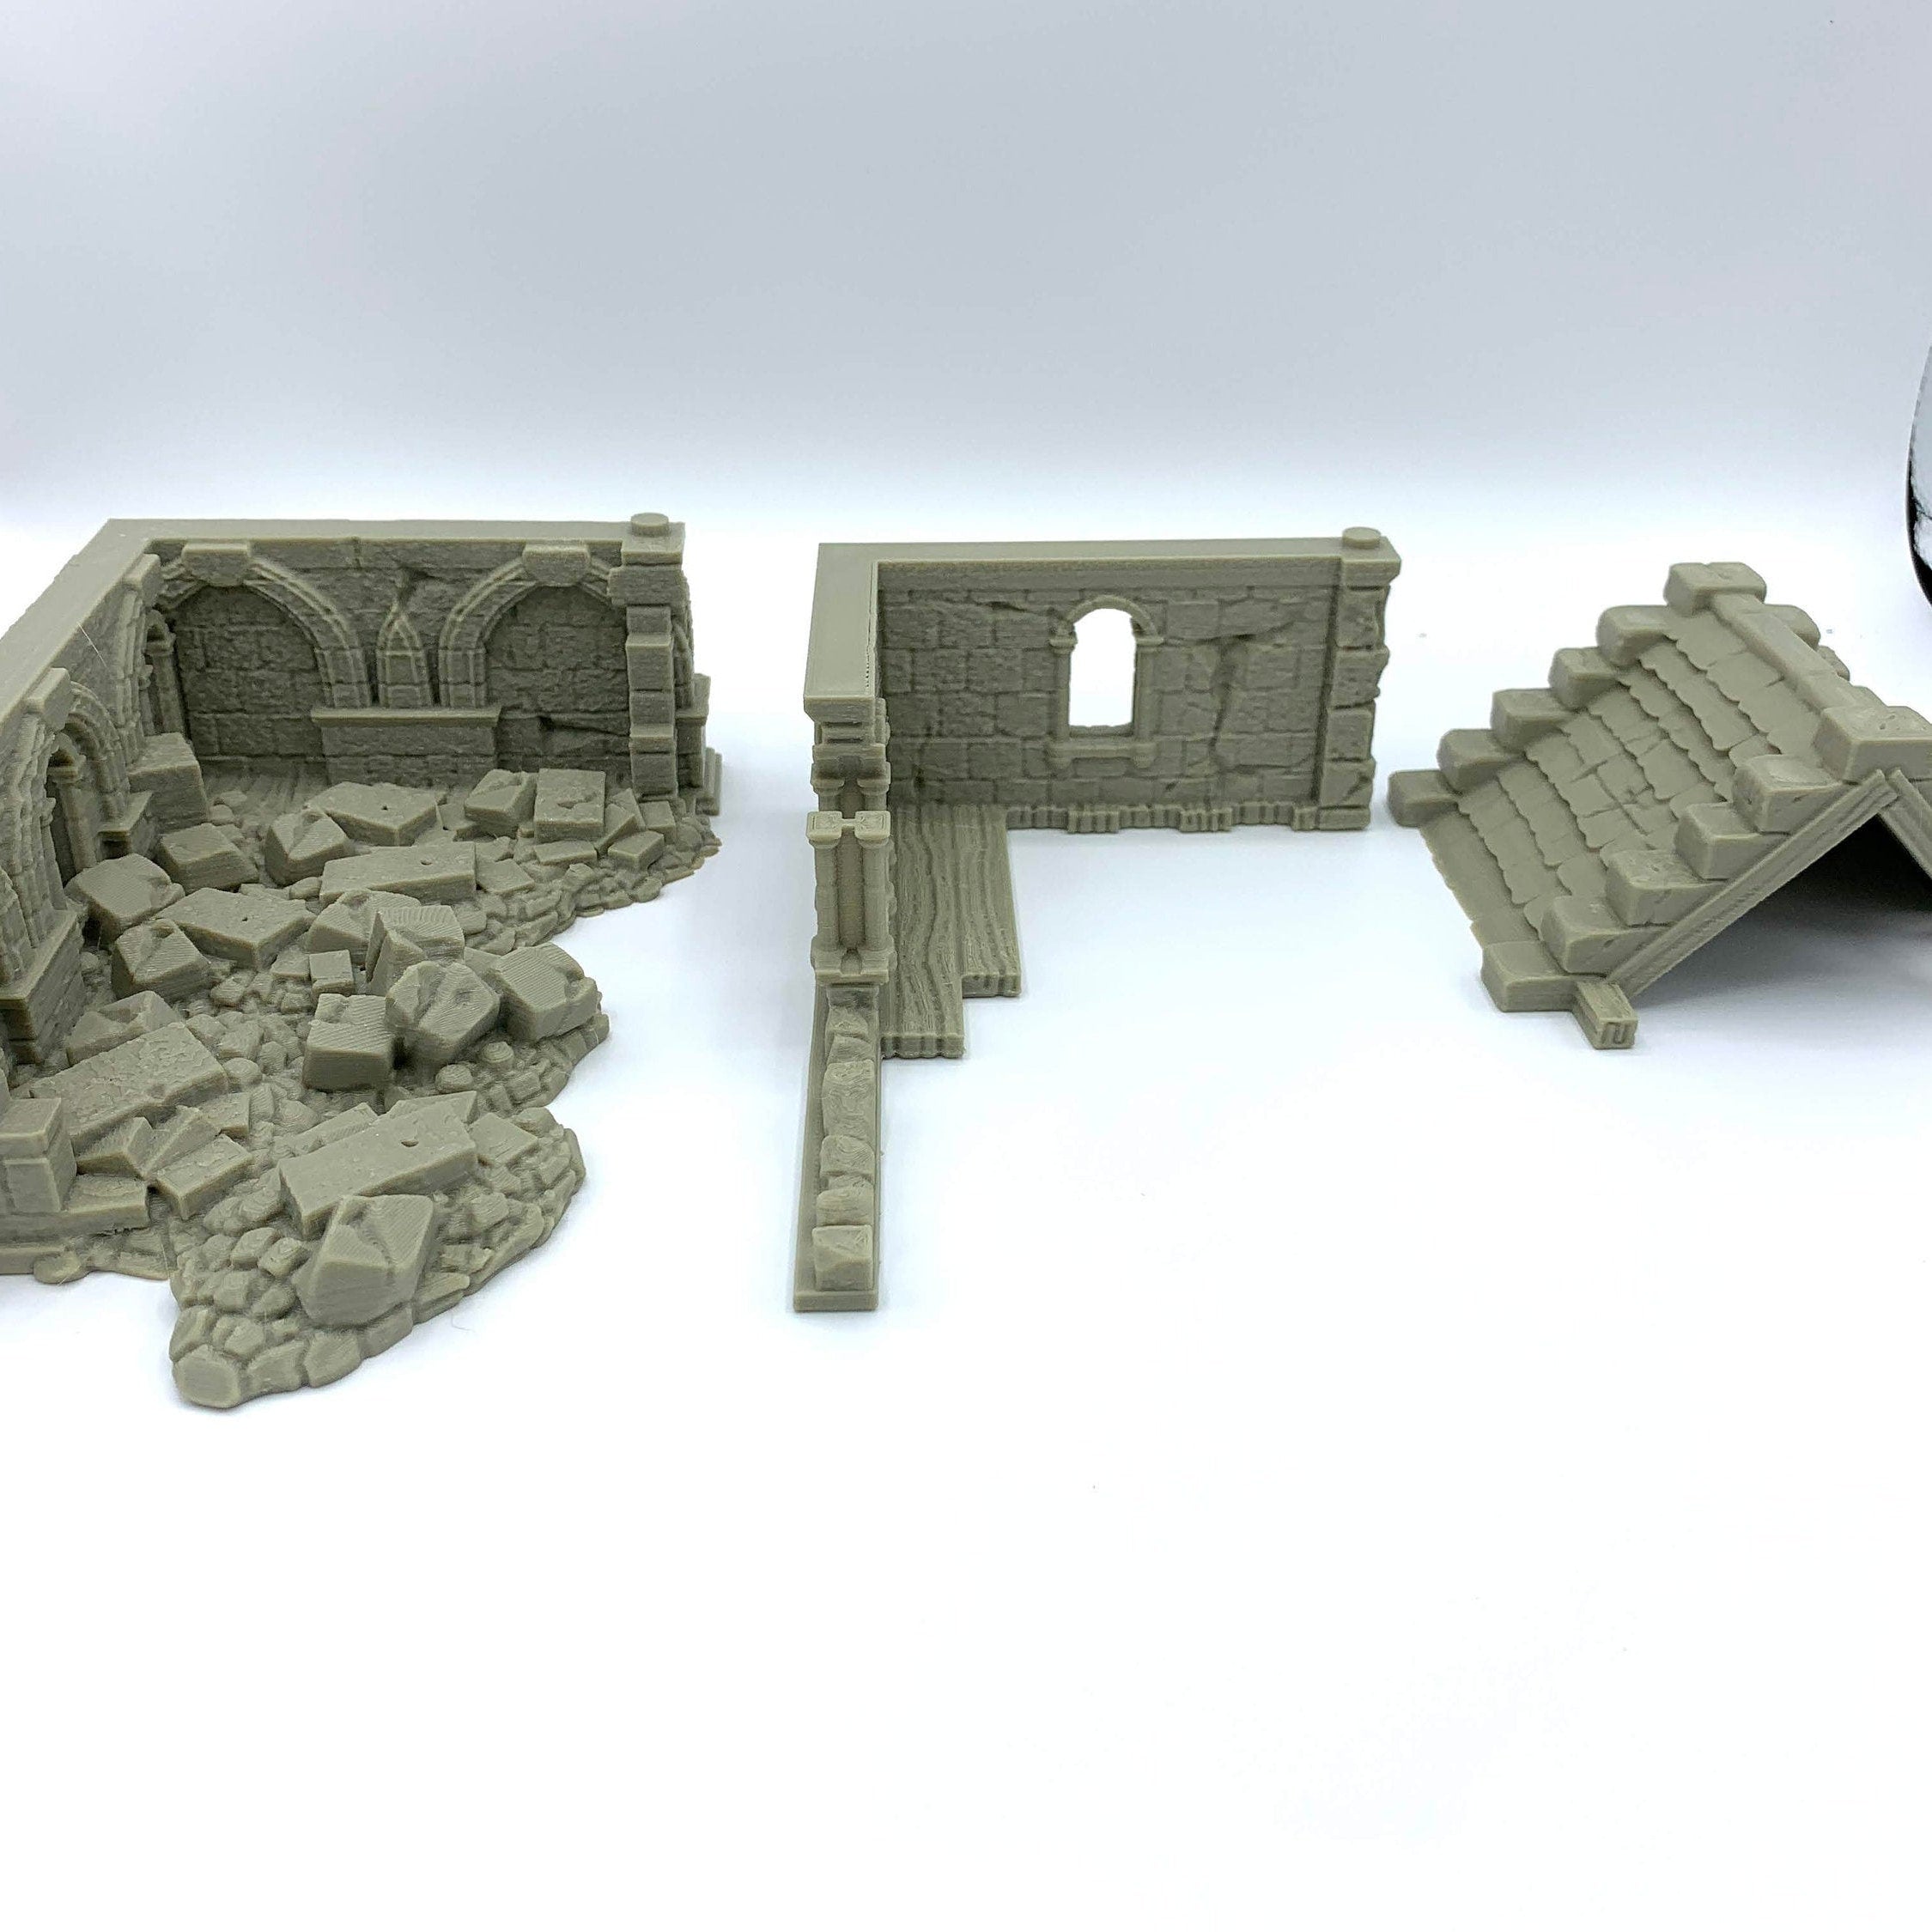 Stormguard - Ruined House 1 / 28mm Wargame / RPG 3d Printed Tabletop Wargaming Terrain